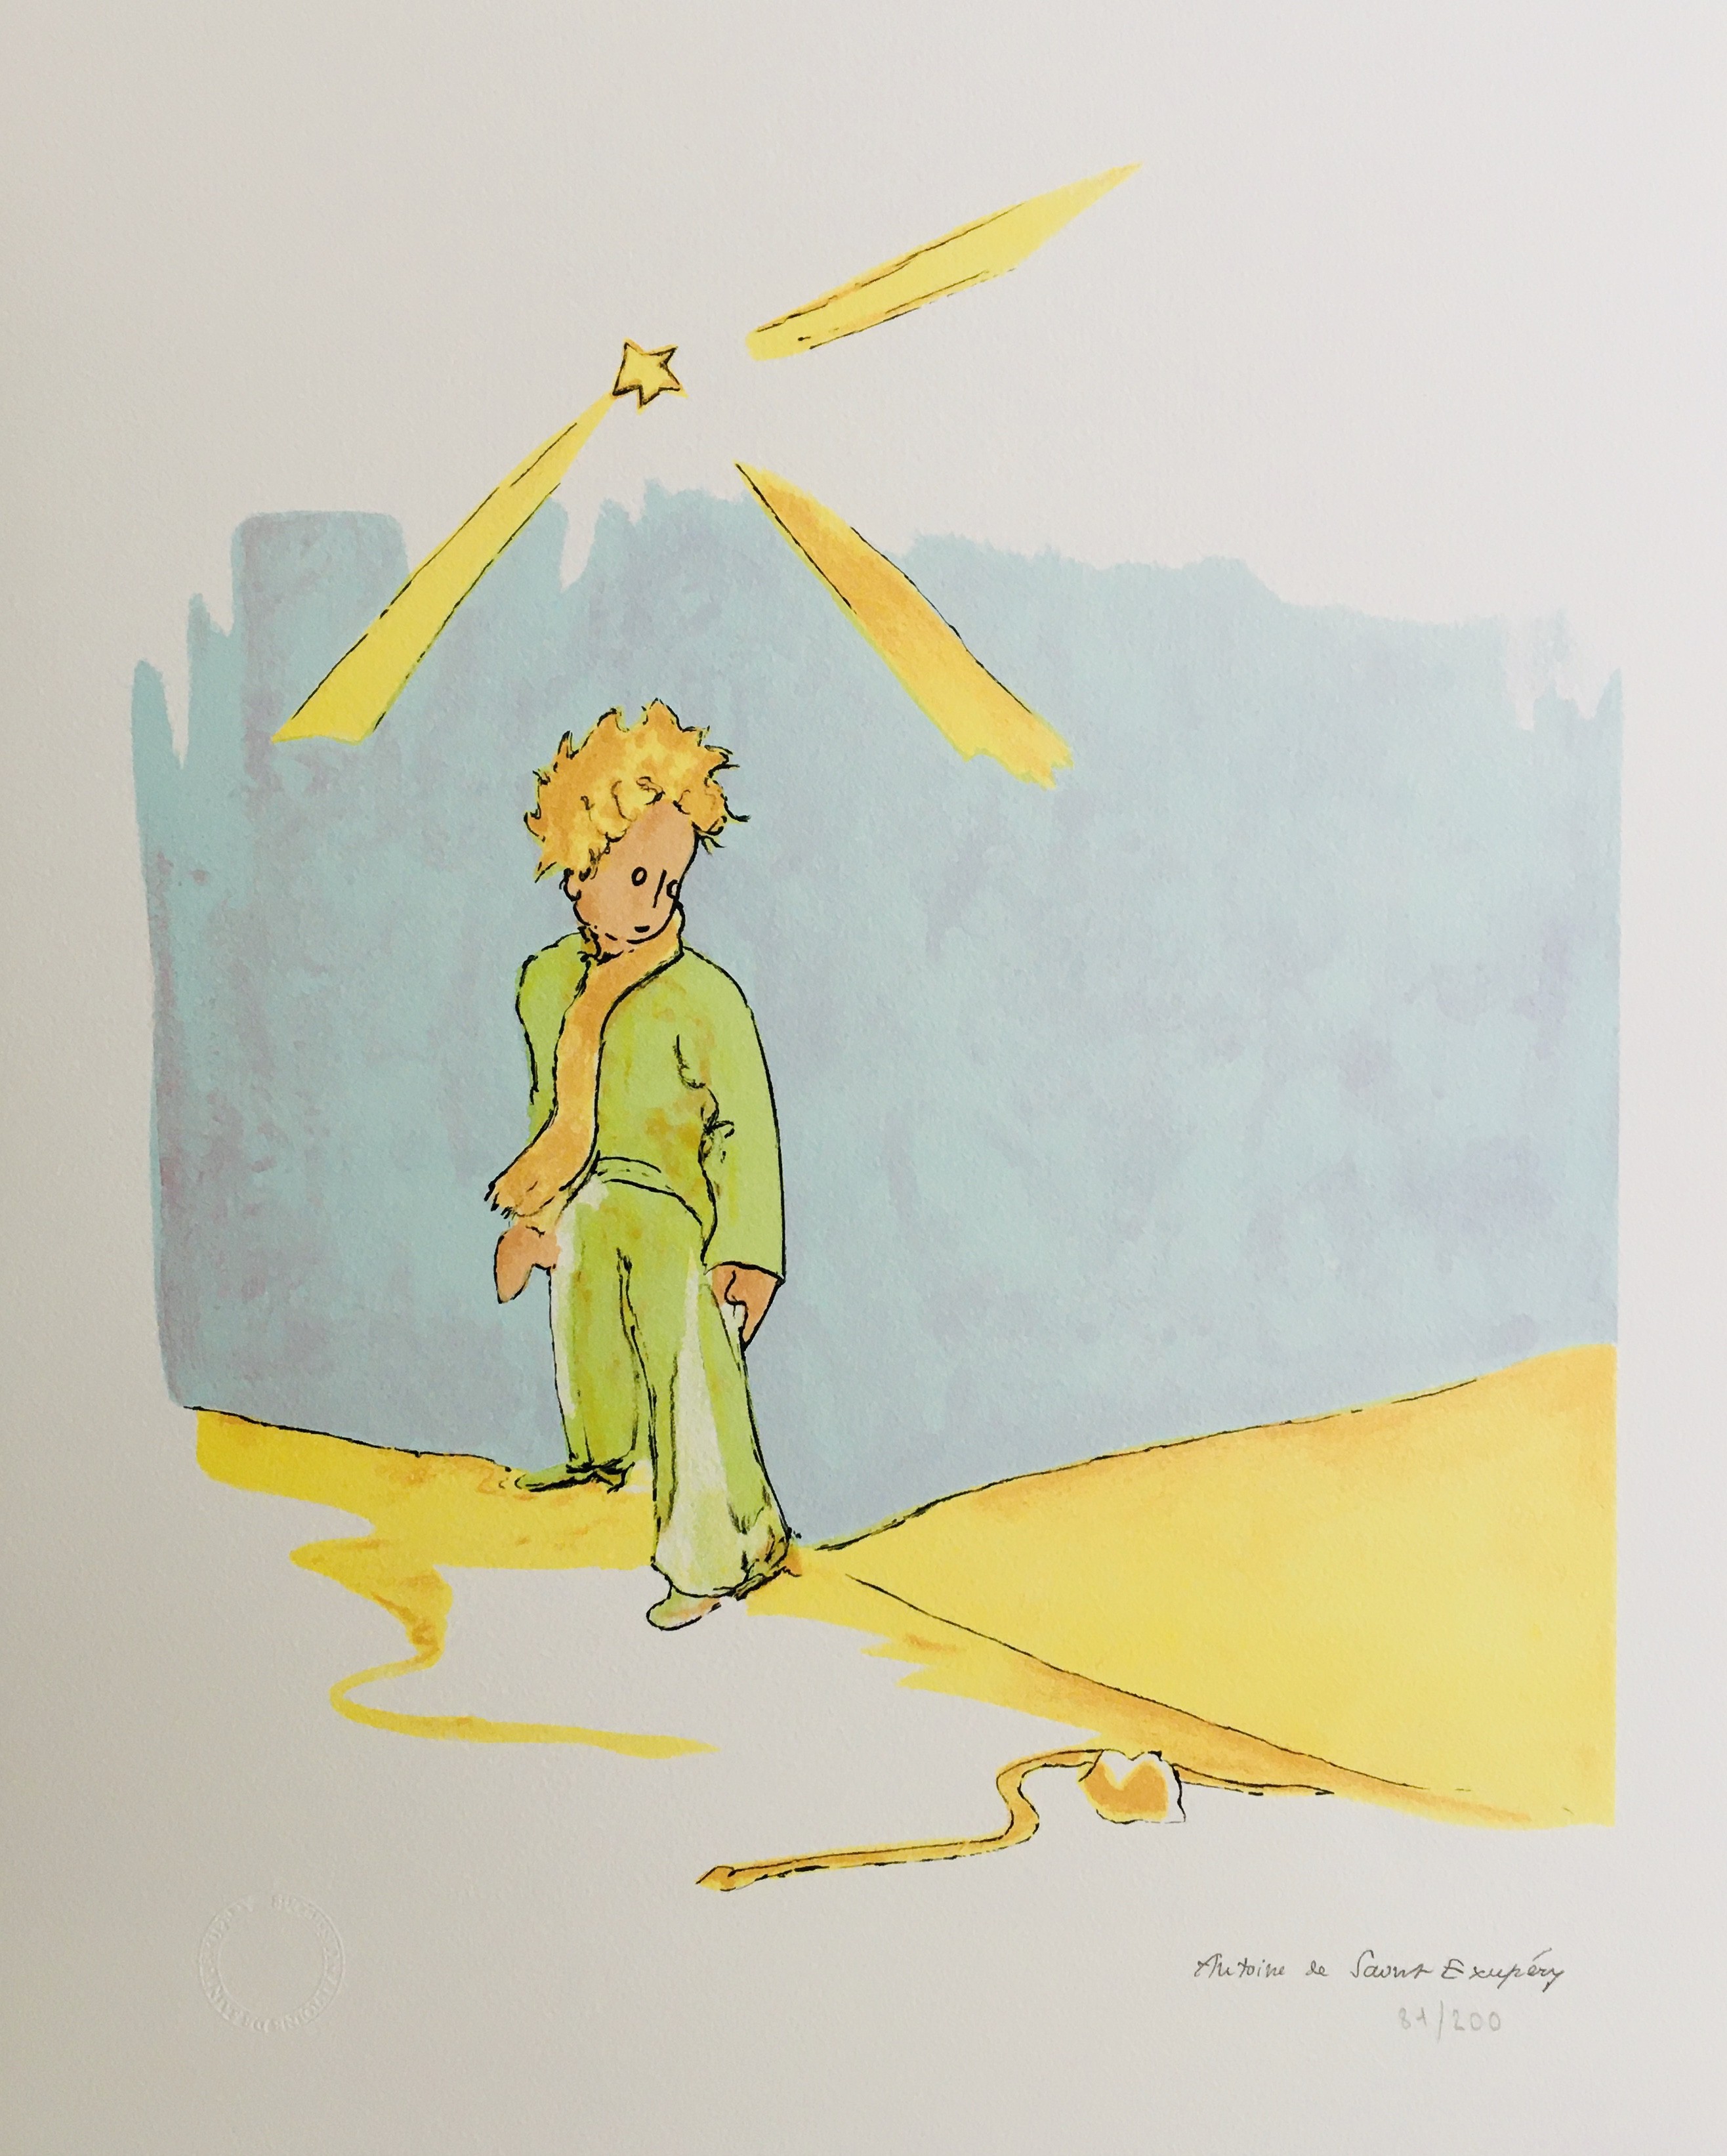 Le Petit Prince [The Little Prince] by Antoine de Saint-Exupéry